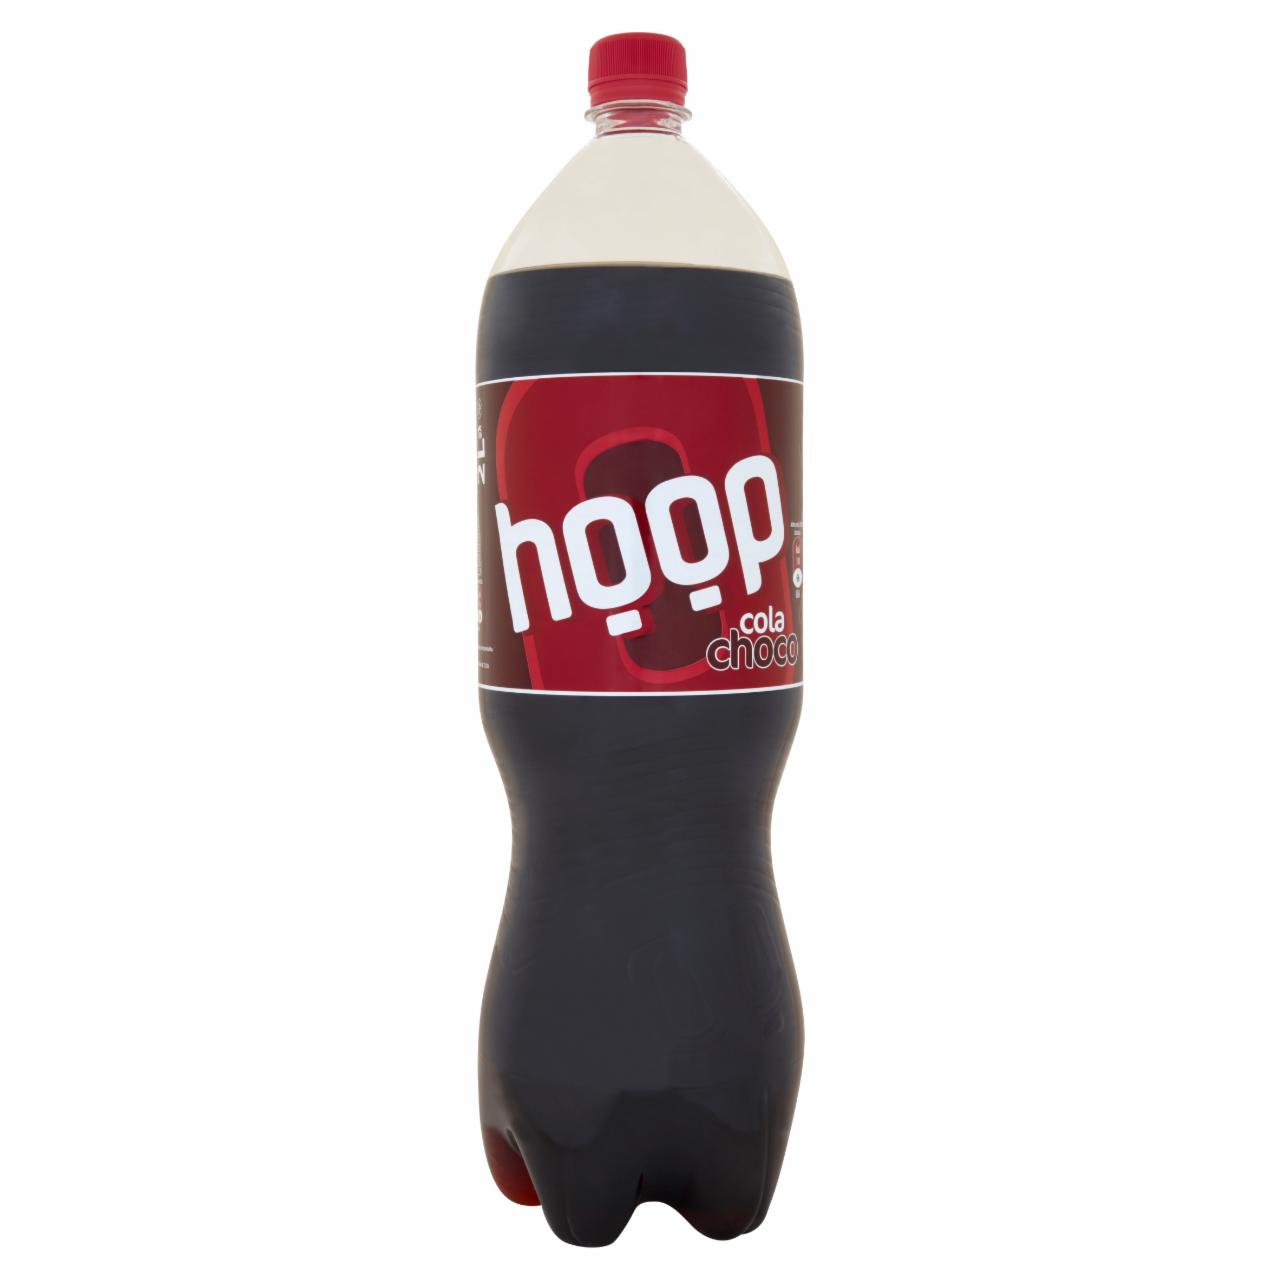 Zdjęcia - Hoop Cola Choco Napój gazowany 2 l